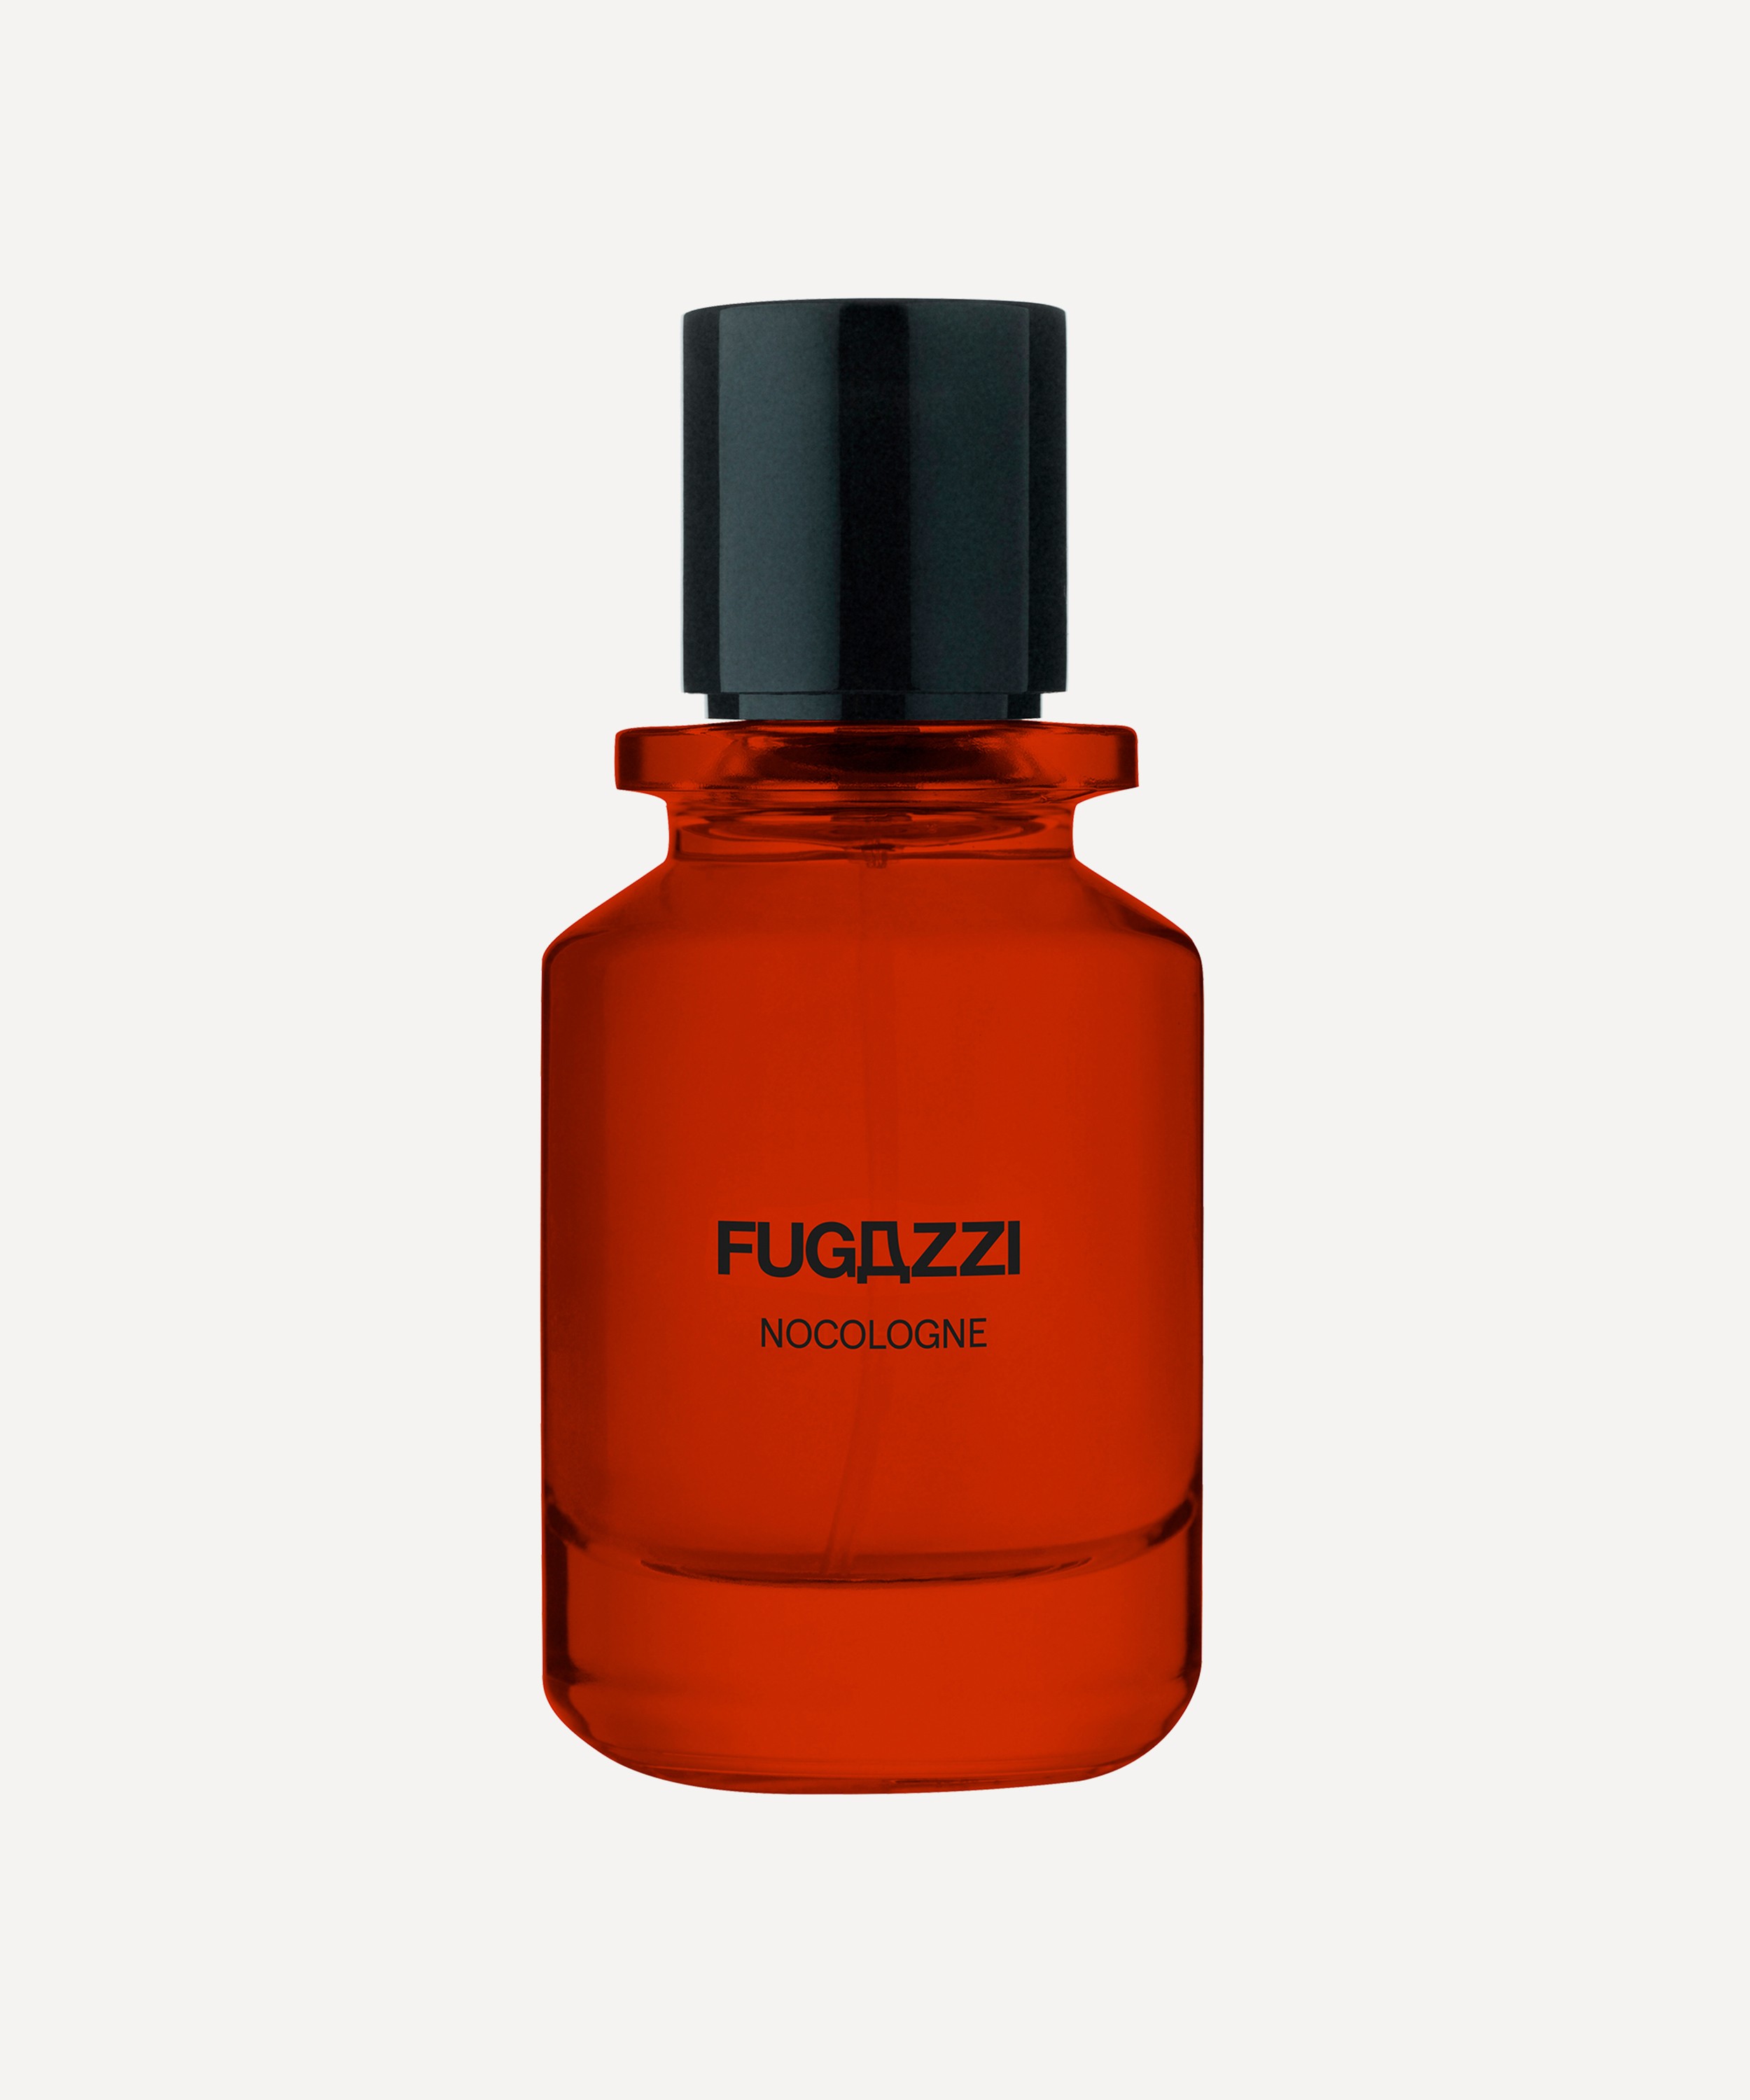 Fugazzi - Nocologne Eau de Parfum 50ml